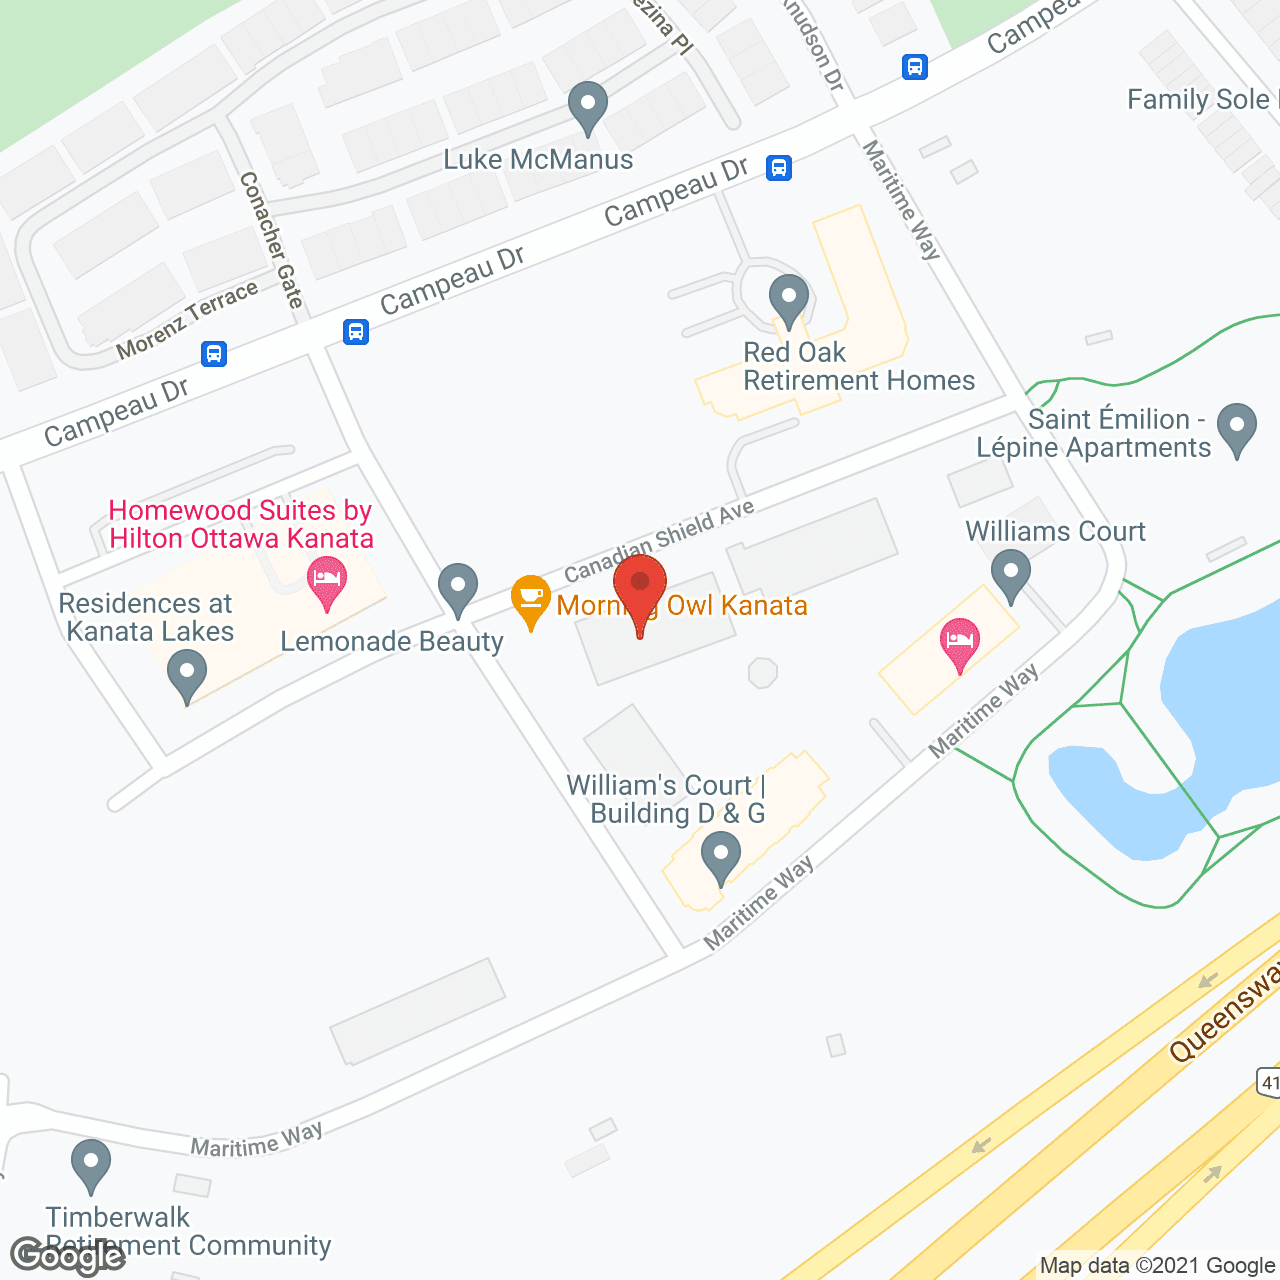 William's Court Building C in google map